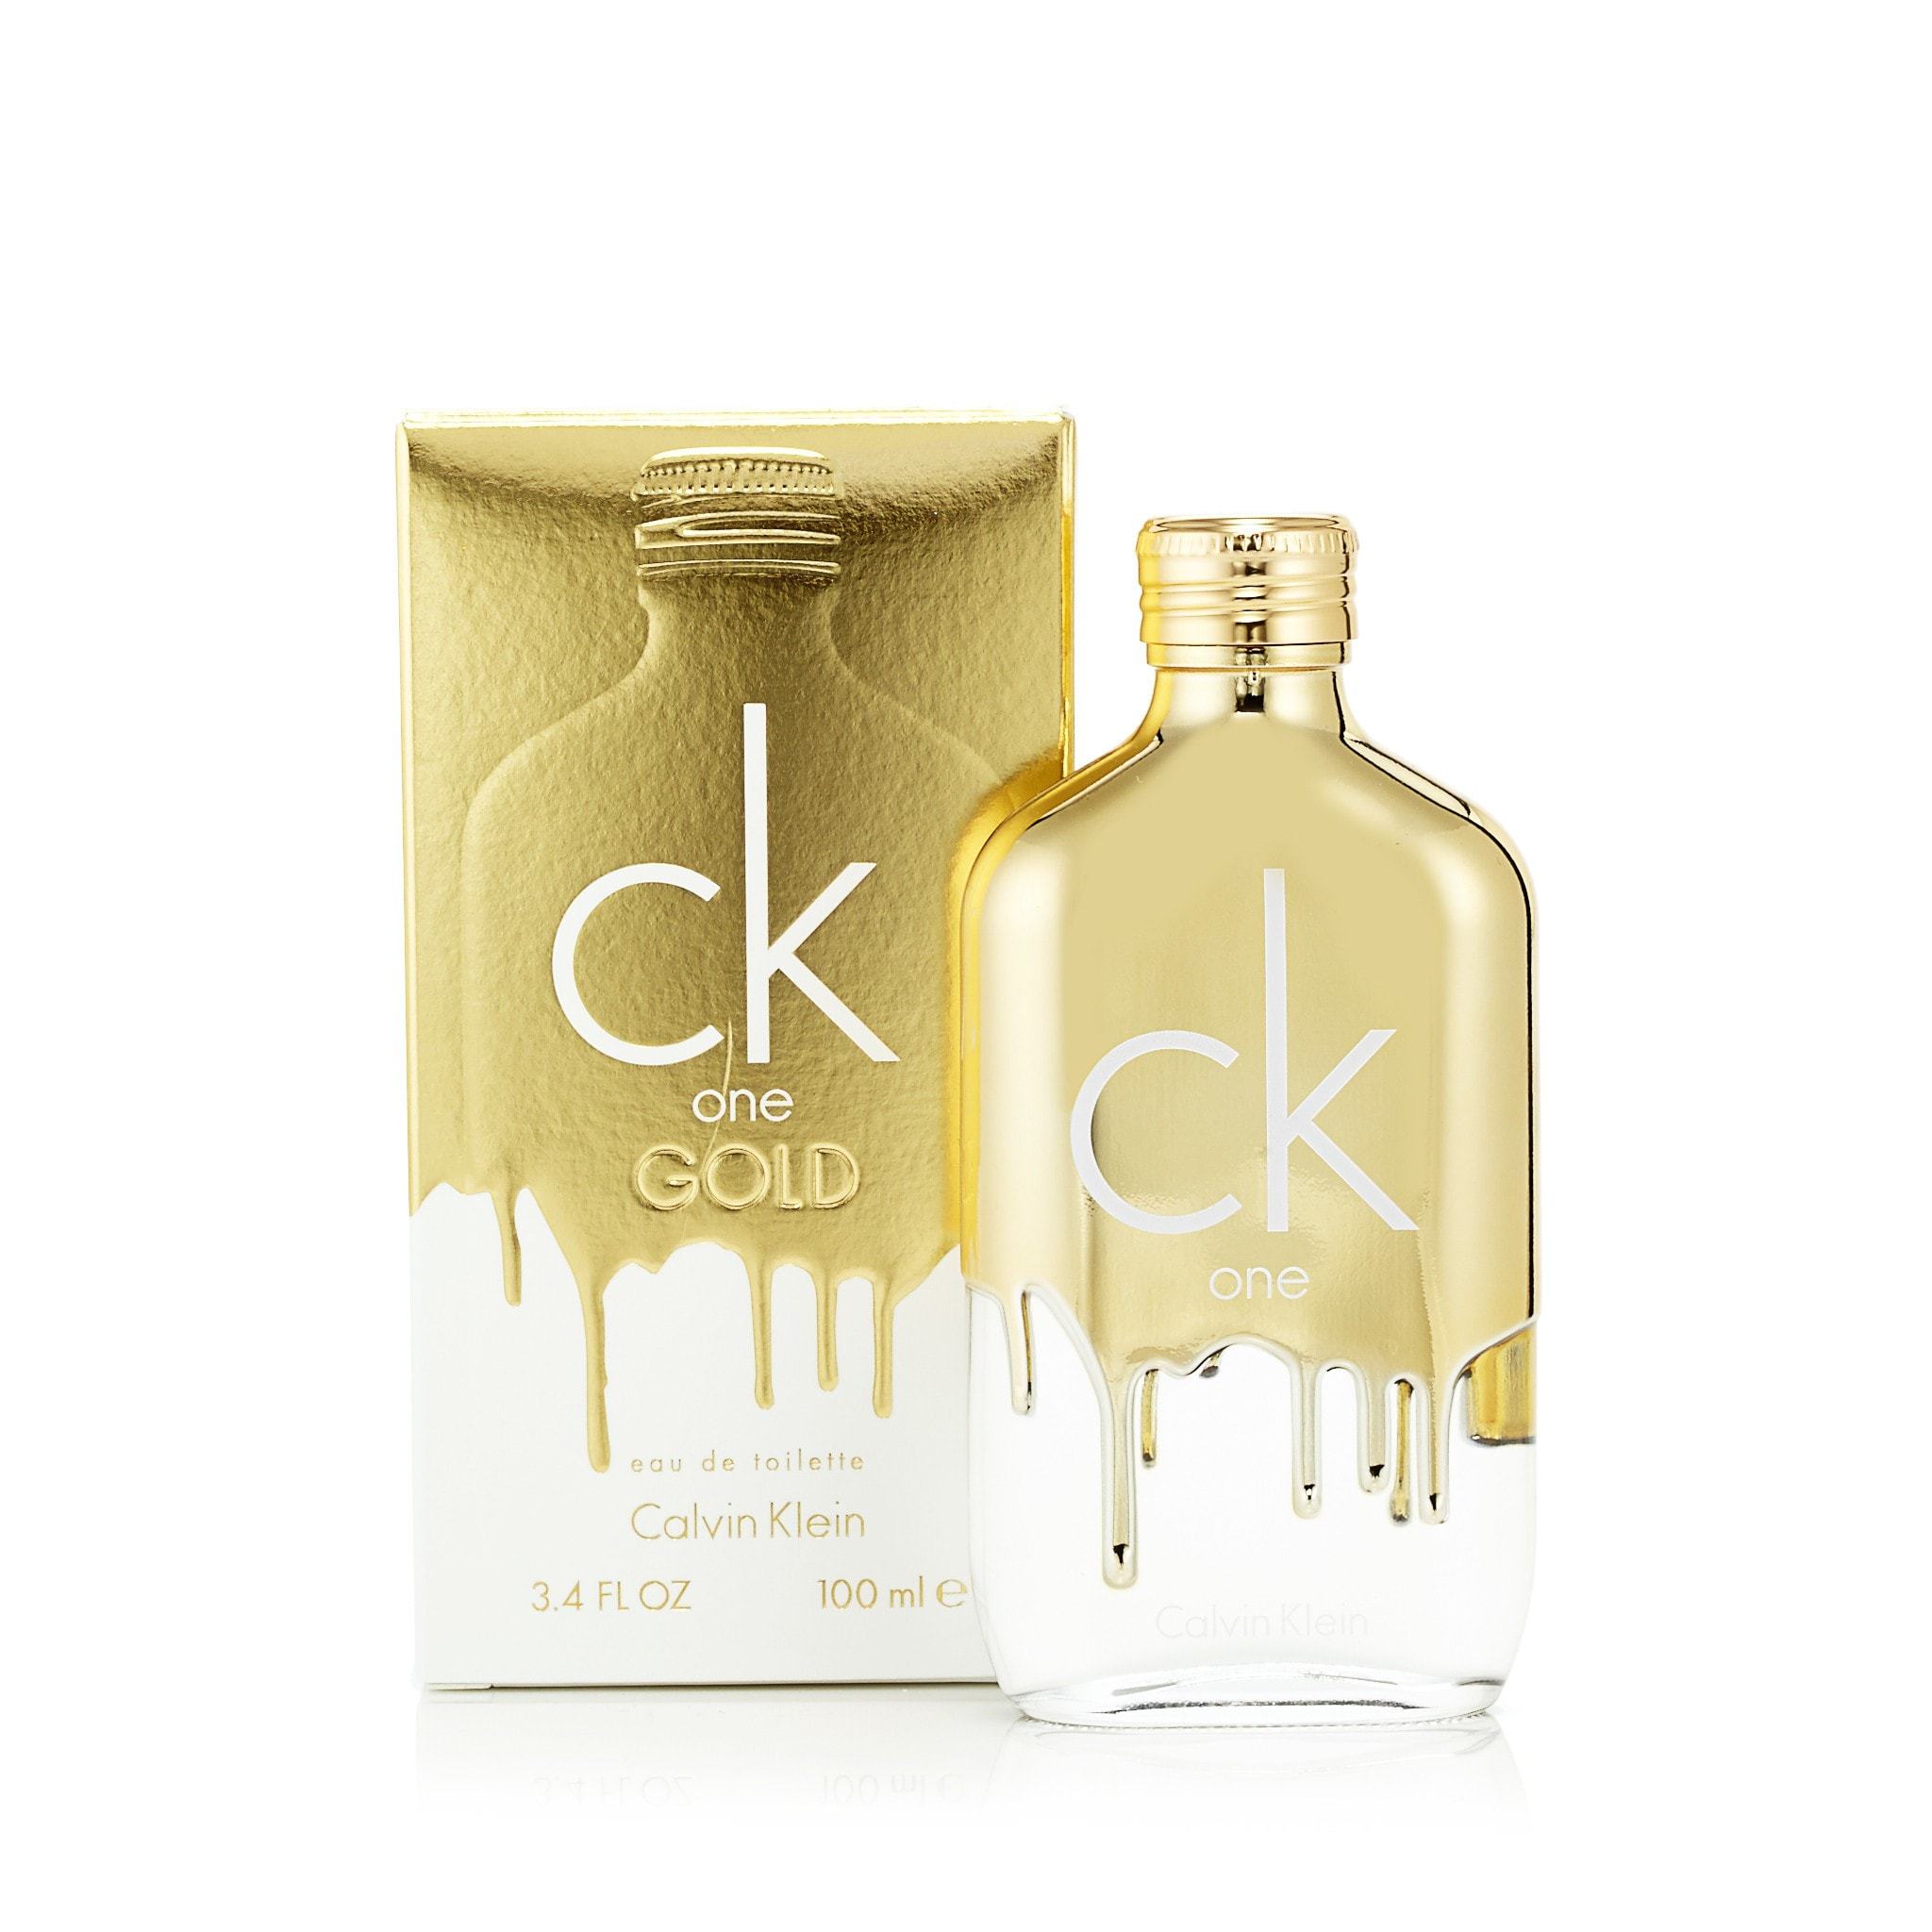 Calvin Klein CK Be Unisex Eau de Toilette Spray - 3.4 fl oz bottle